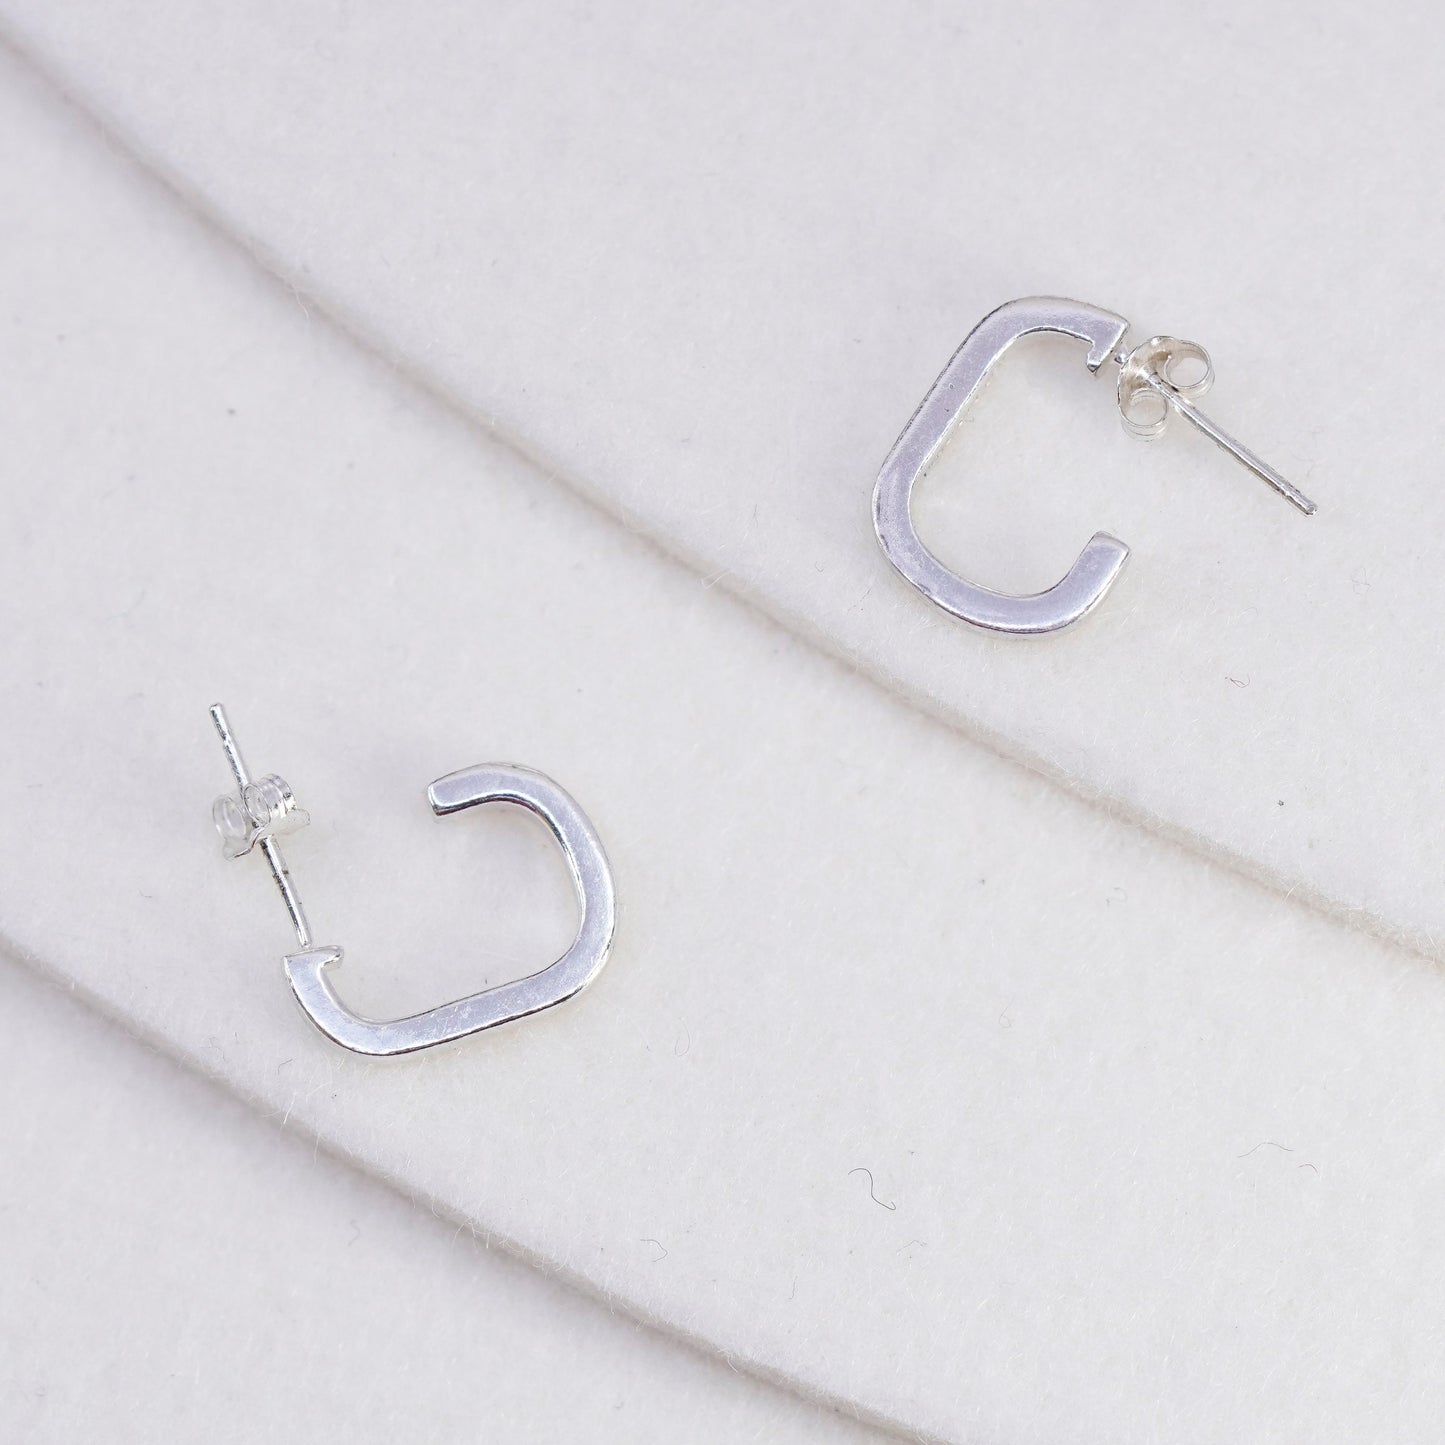 0.5”, vintage Sterling silver handmade earrings, 925 hoops